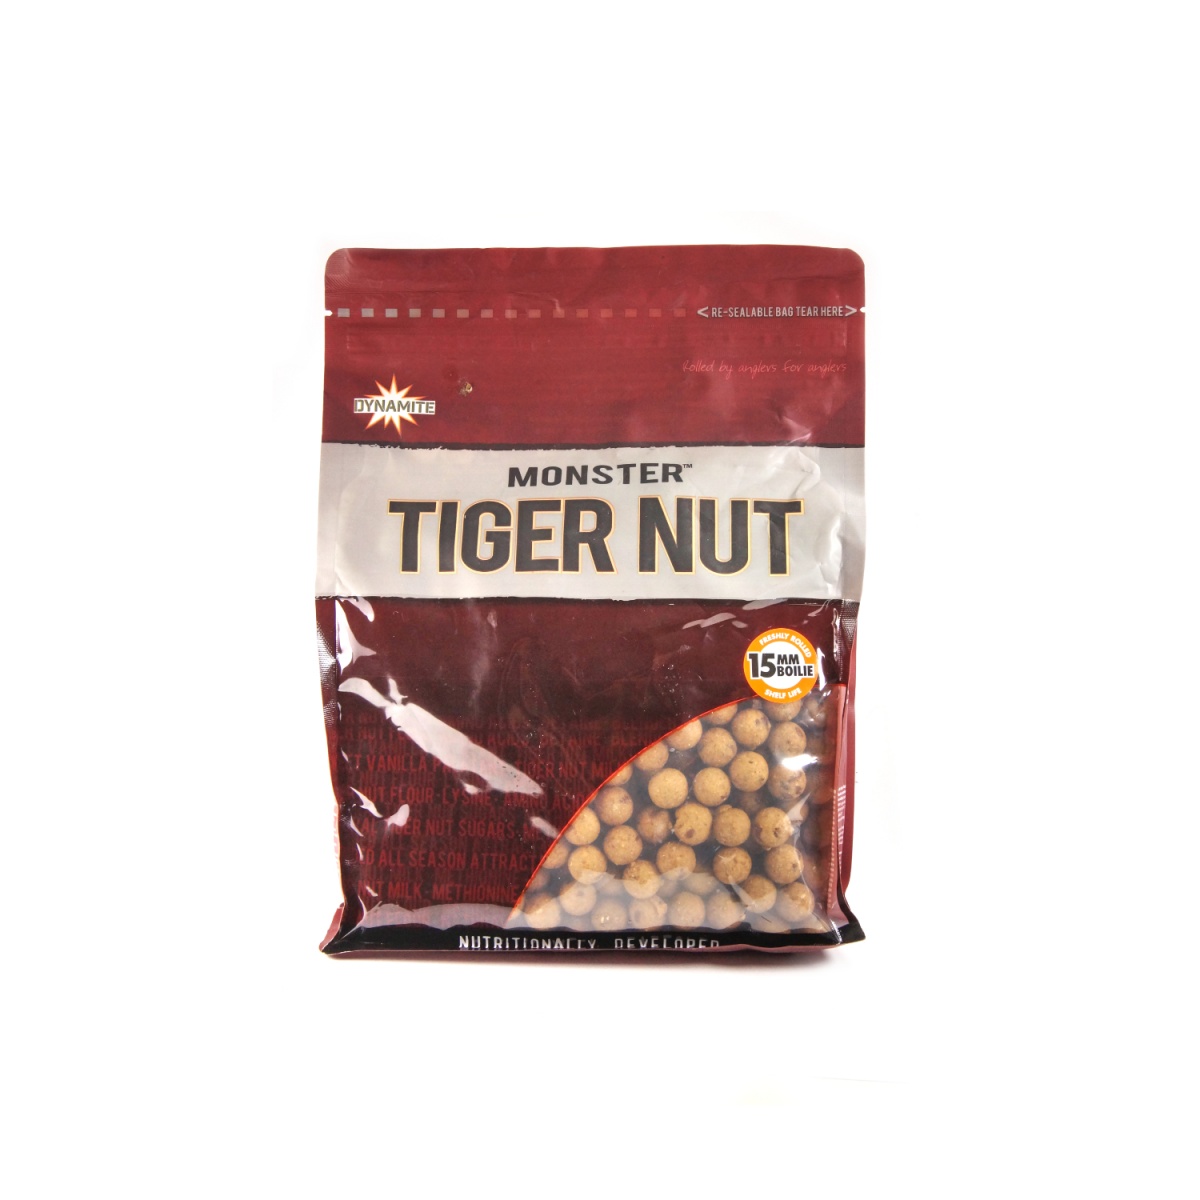 NEW DynamiteBaits Monster Tiger Nut Boilie - Kulki Proteinowe 15 mm / 1kg rozmiar / opakowanie